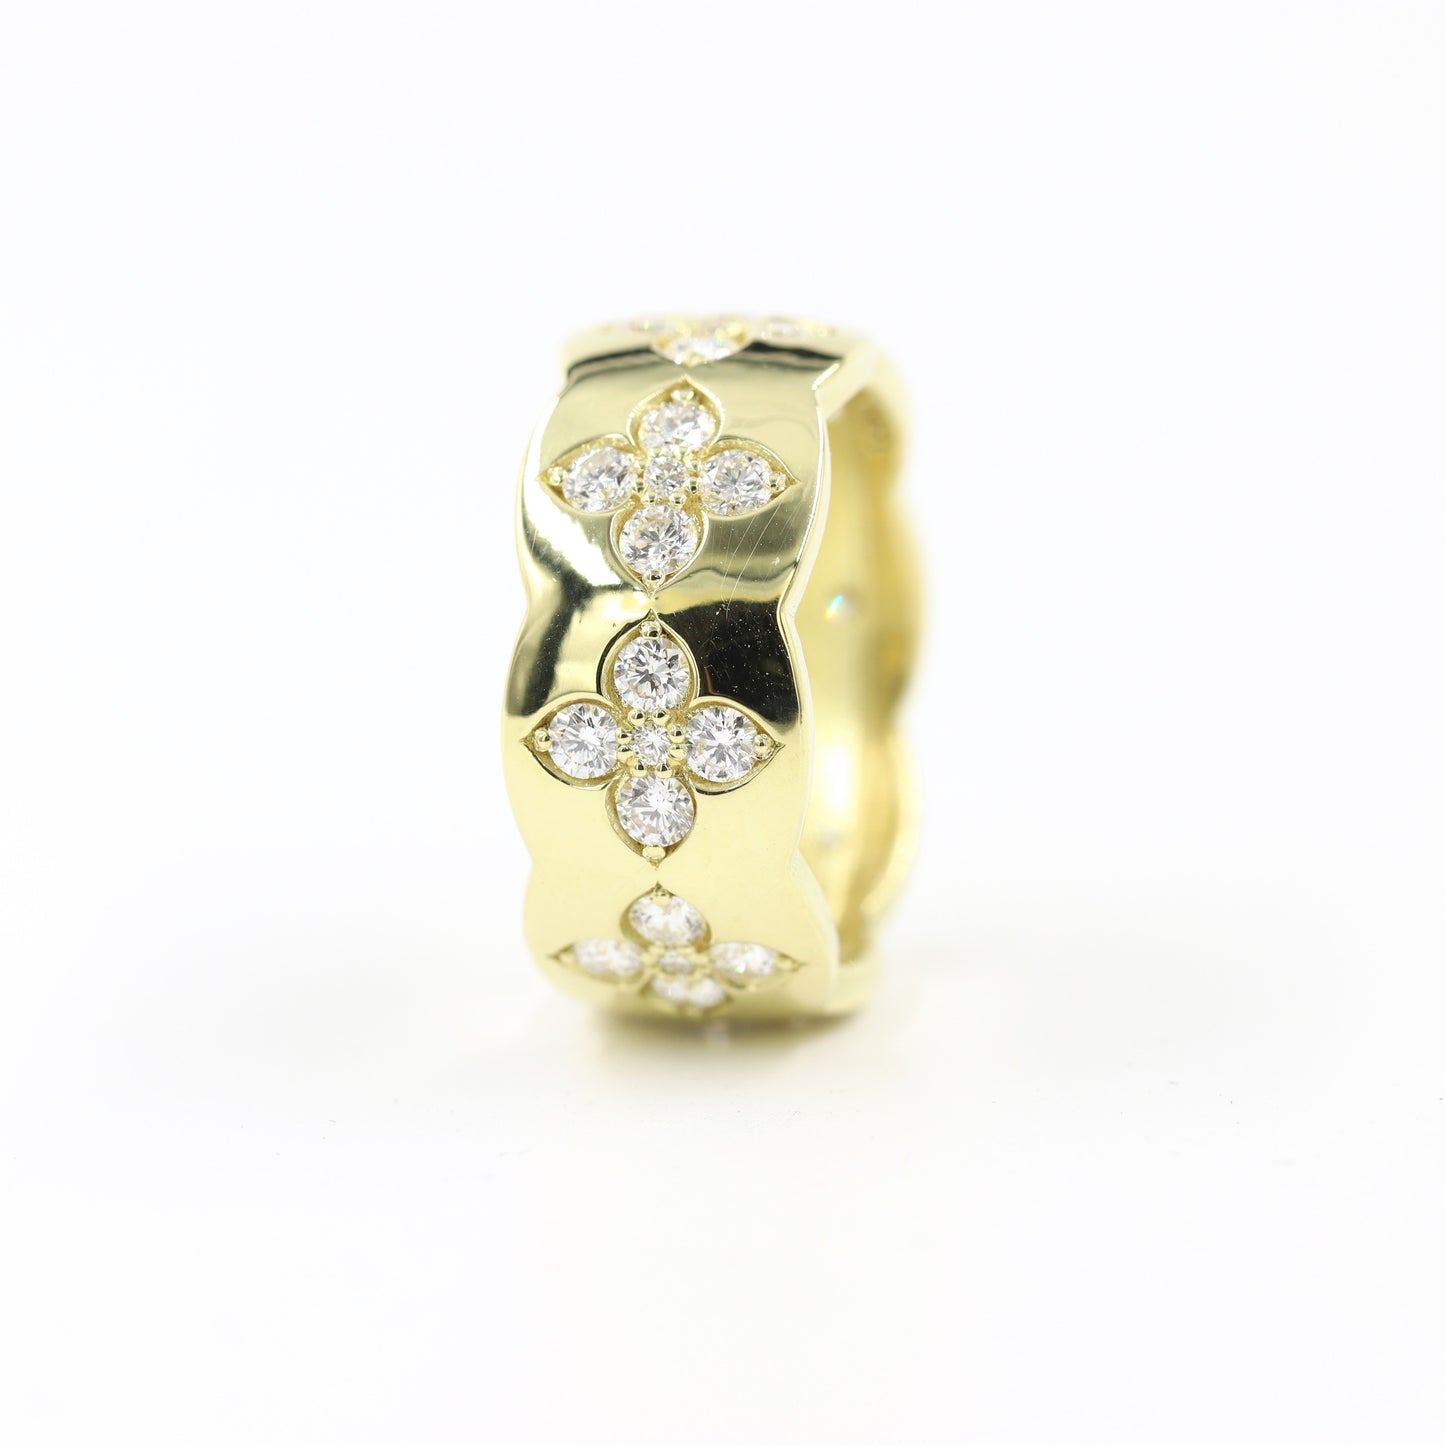 Flower Full Diamond Band / 14K Eternity ring / Flower Natural Diamond Wedding Ring / Engagement Ring / Anniversary Ring / Gift for her